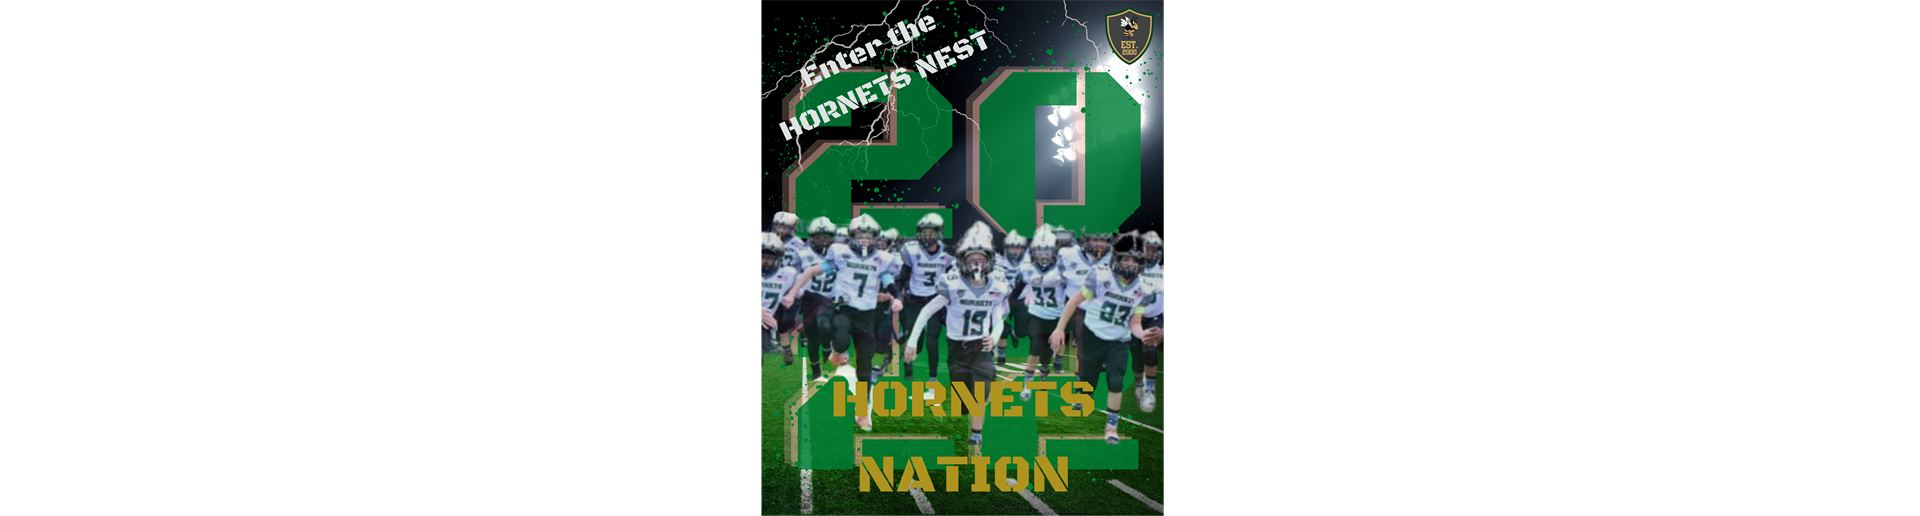 Enter The Hornets Nest